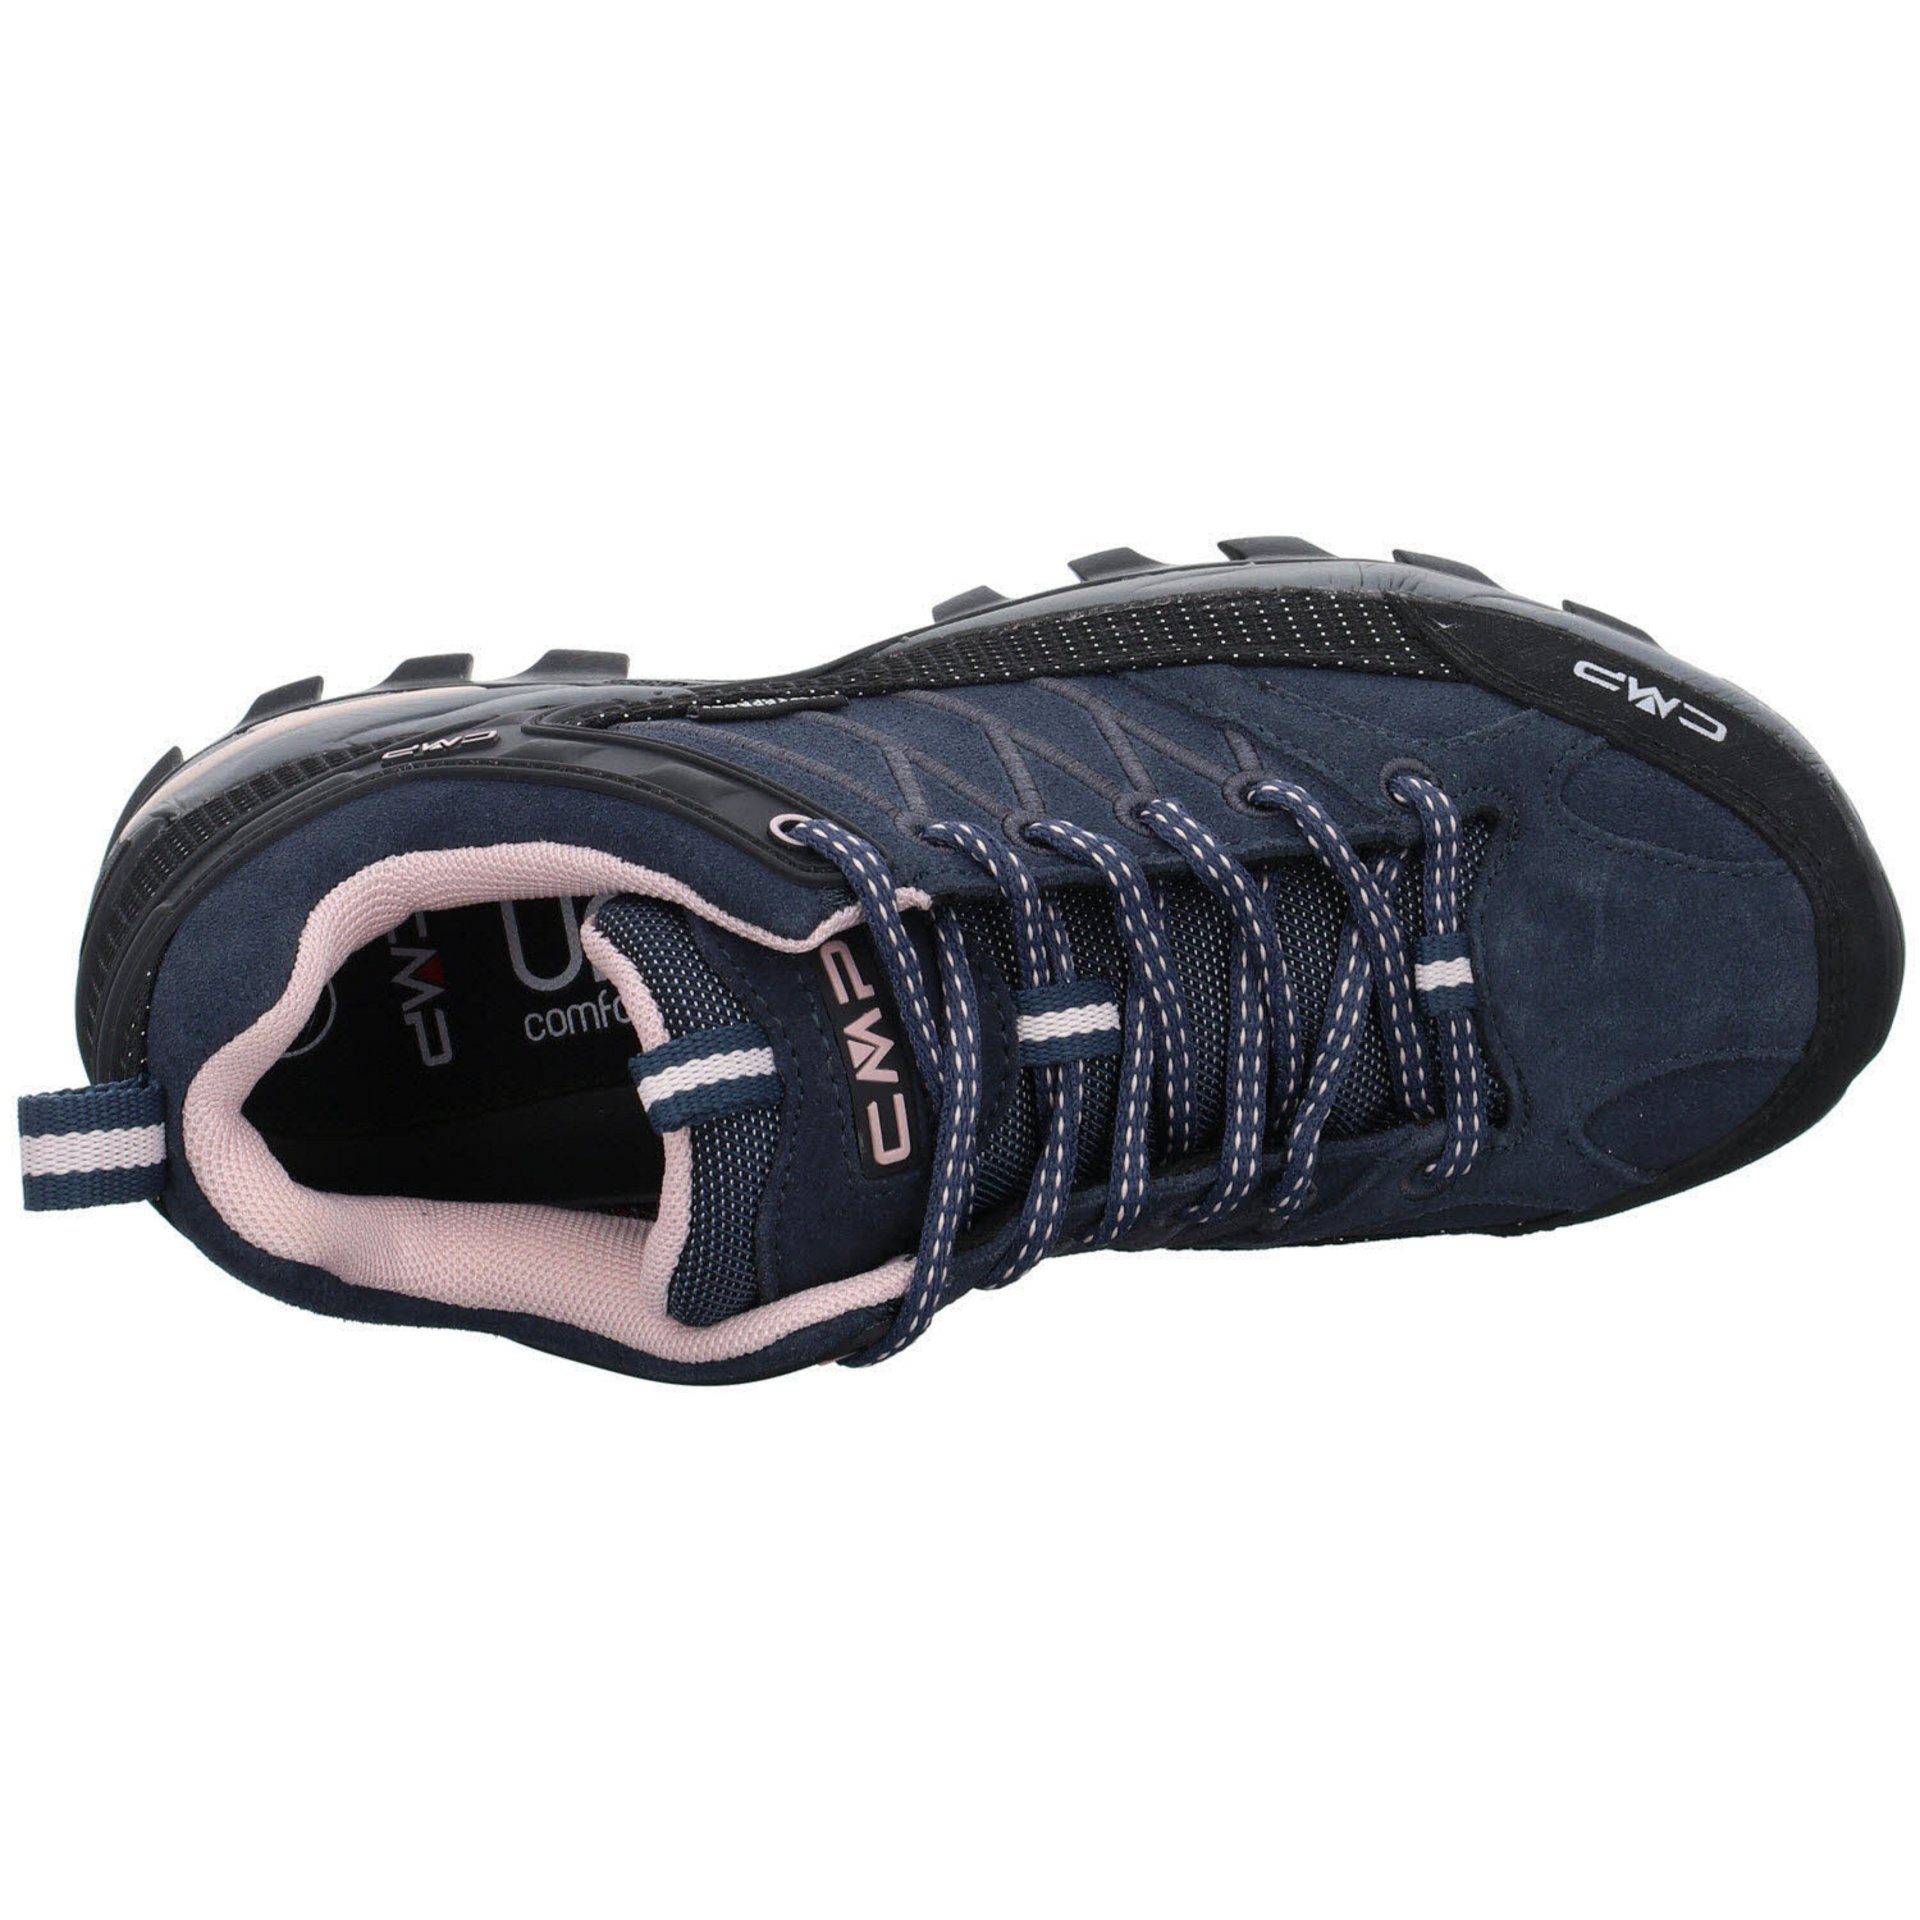 CMP Damen Outdoorschuh Outdoorschuh Outdoor Riegel Leder-/Textilkombination Schuhe anthrazit (201) Low